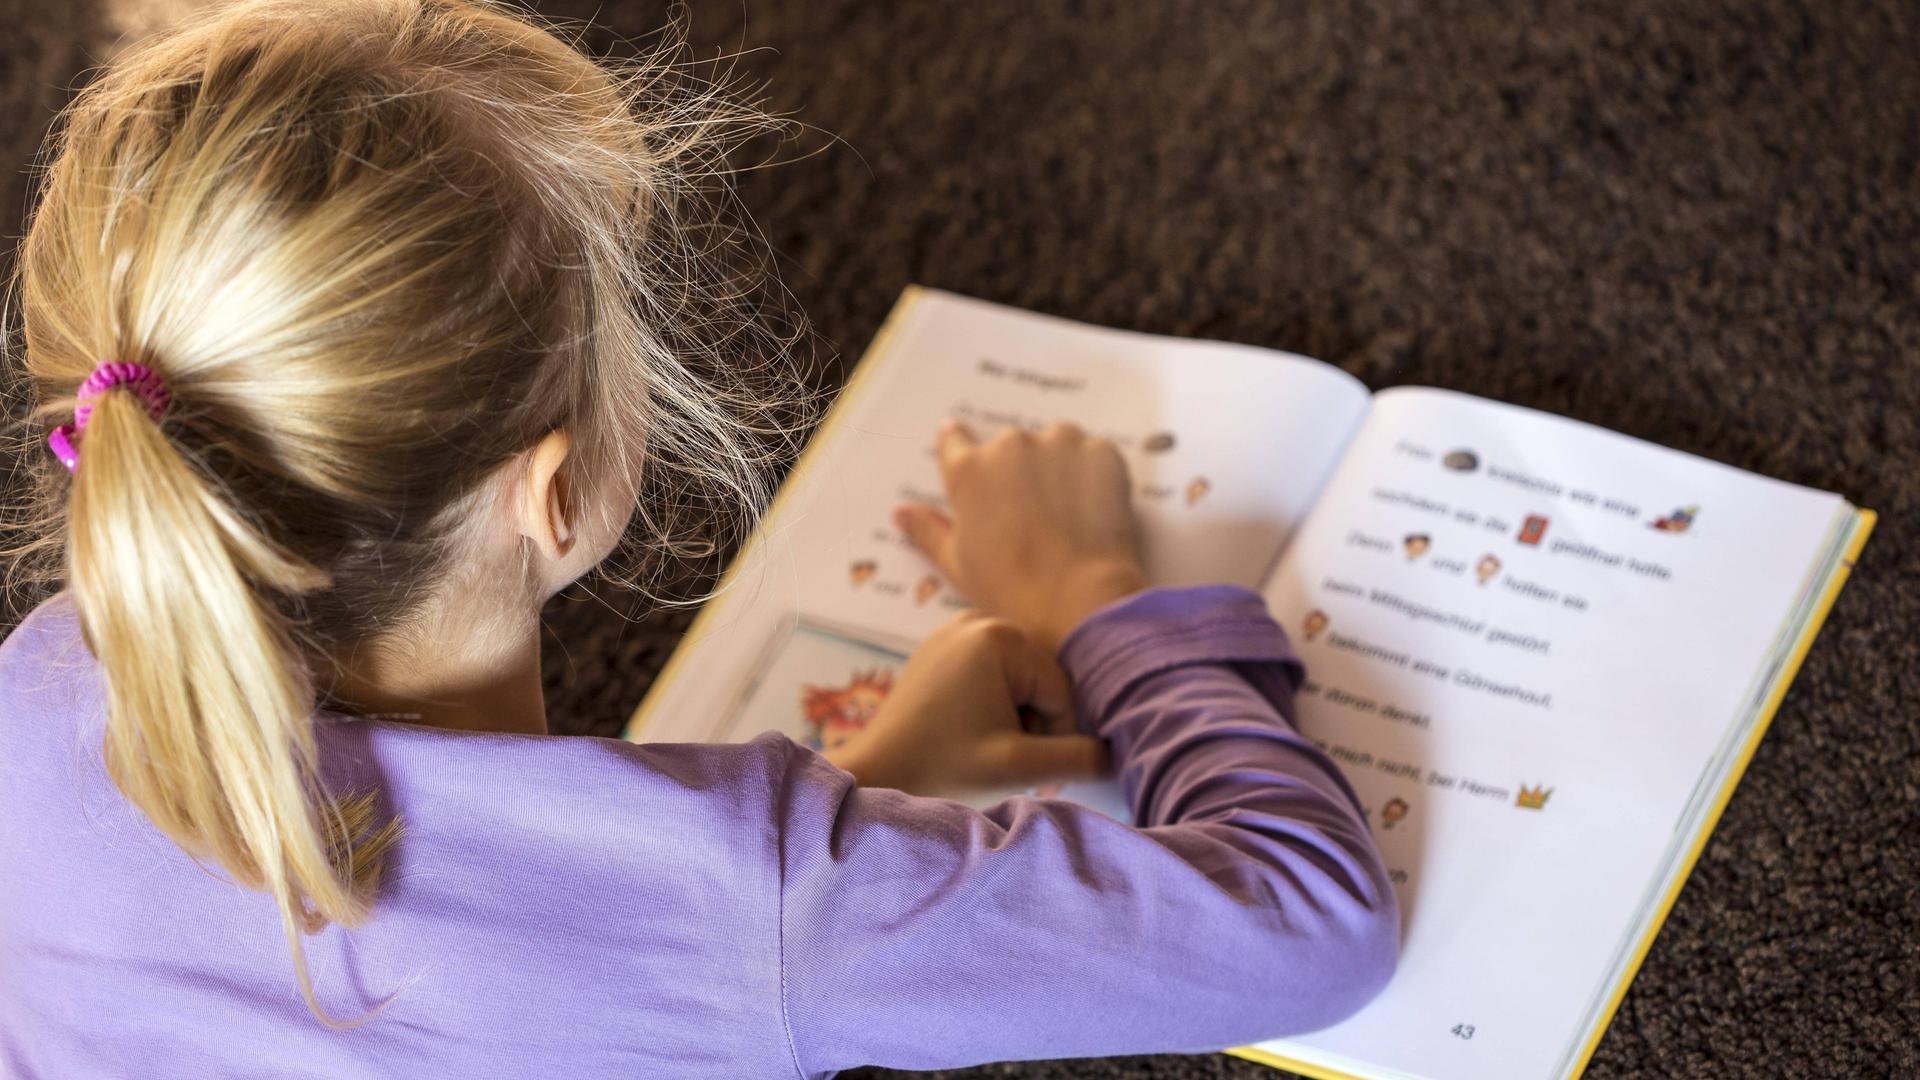 Ein Mädchen mit blonden Haaren liegt und liest ein Buch. Sie zeigt mit dem Finger auf die Buchstaben.